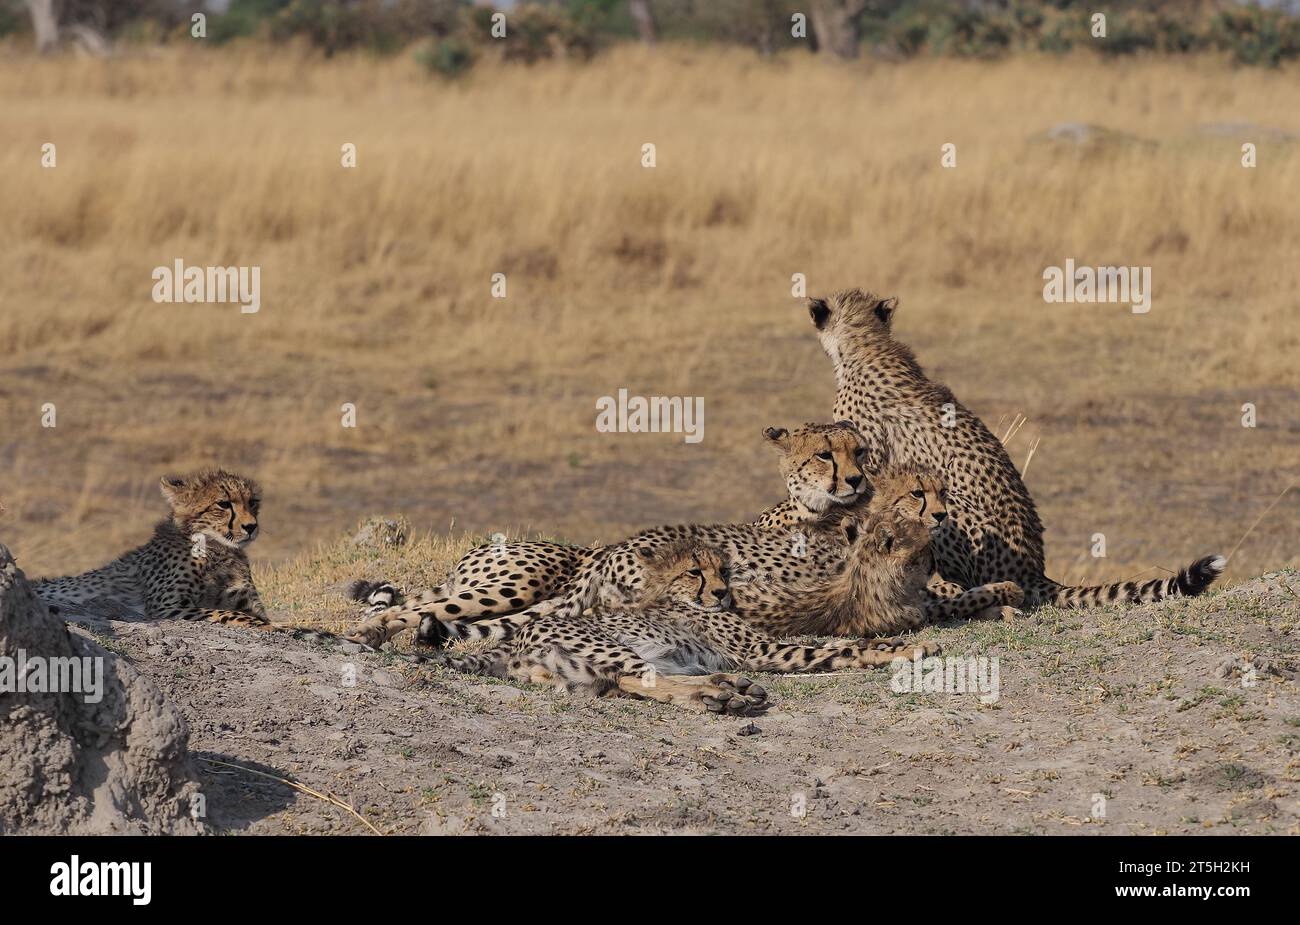 Diese Mutter Geparde hatte fünf Jungtiere in einem Gebiet des Okavango-Deltas mit vielen Löwen und wilden Hunden aufgezogen, die Jungen hätten bald ihr Jungfell verloren. Stockfoto